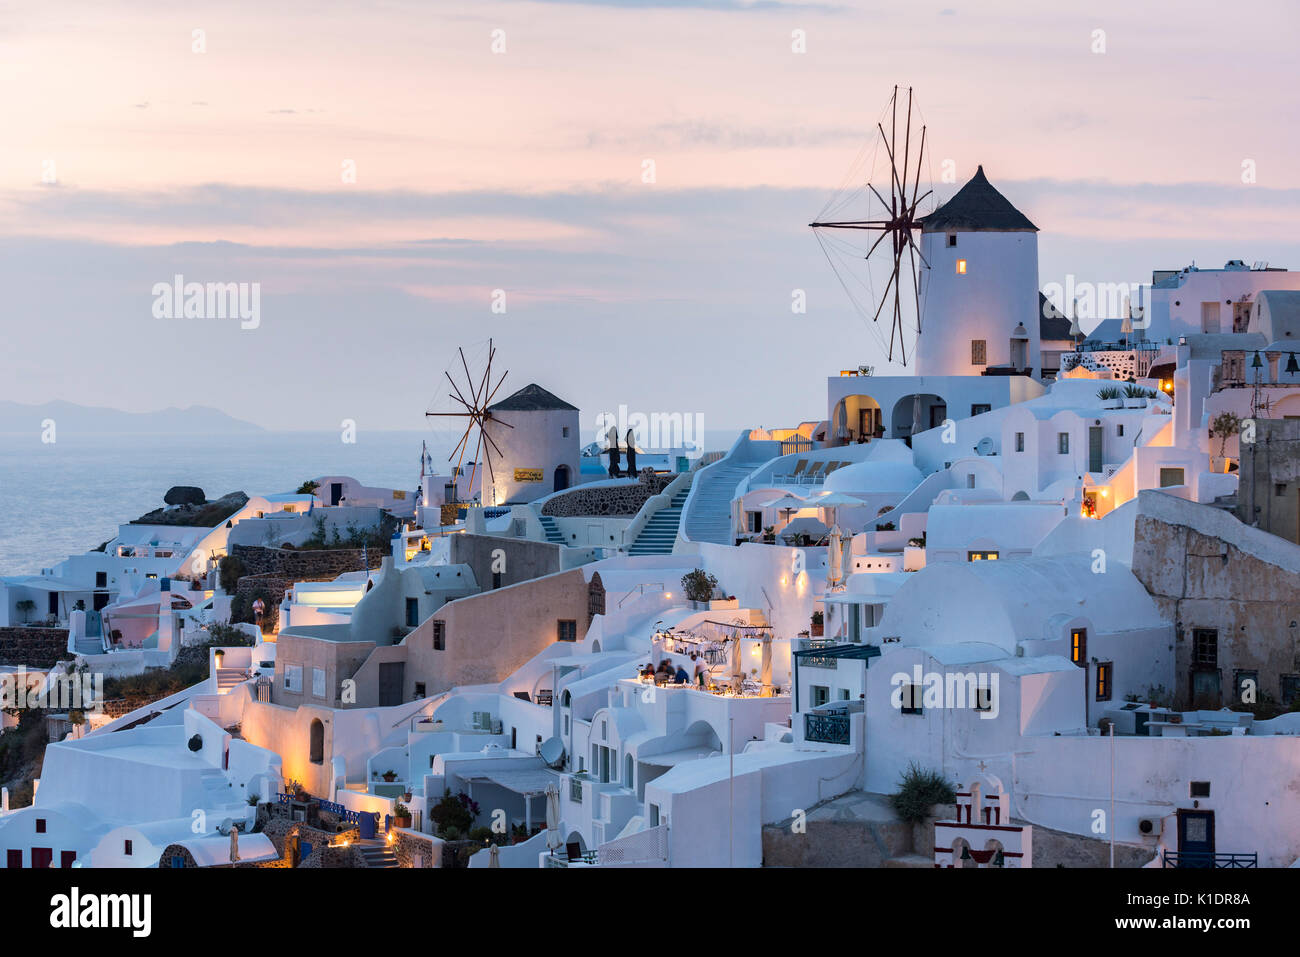 Le paysage urbain de moulins, crépuscule, Oia, Santorini, Cyclades, Grèce Banque D'Images